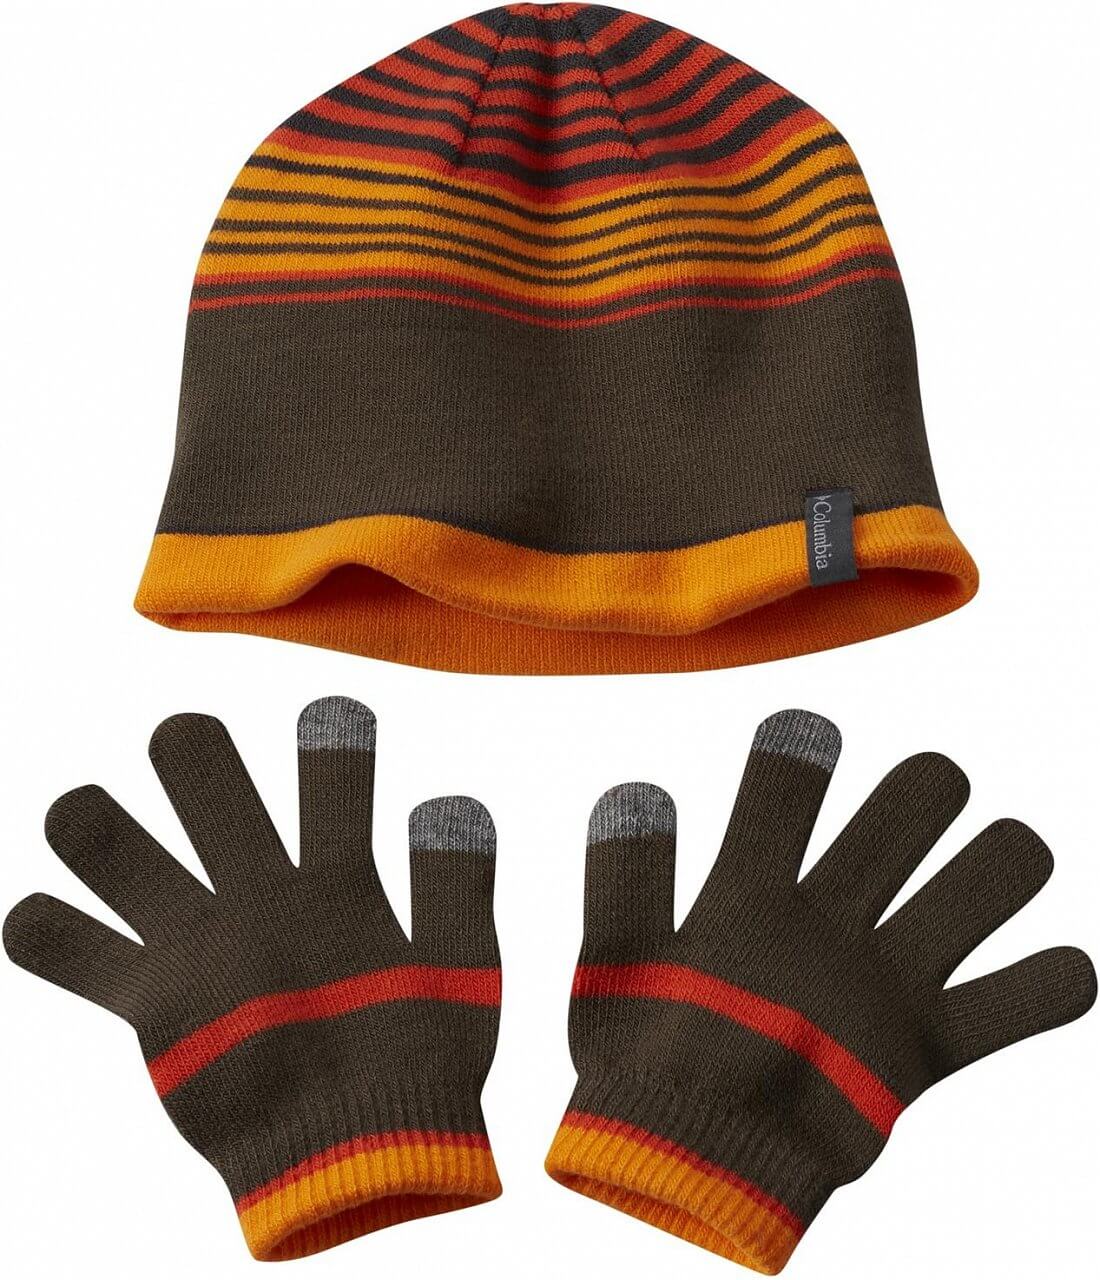 Set dětské čepice s rukavicemi Columbia Youth Hat and Glove Set